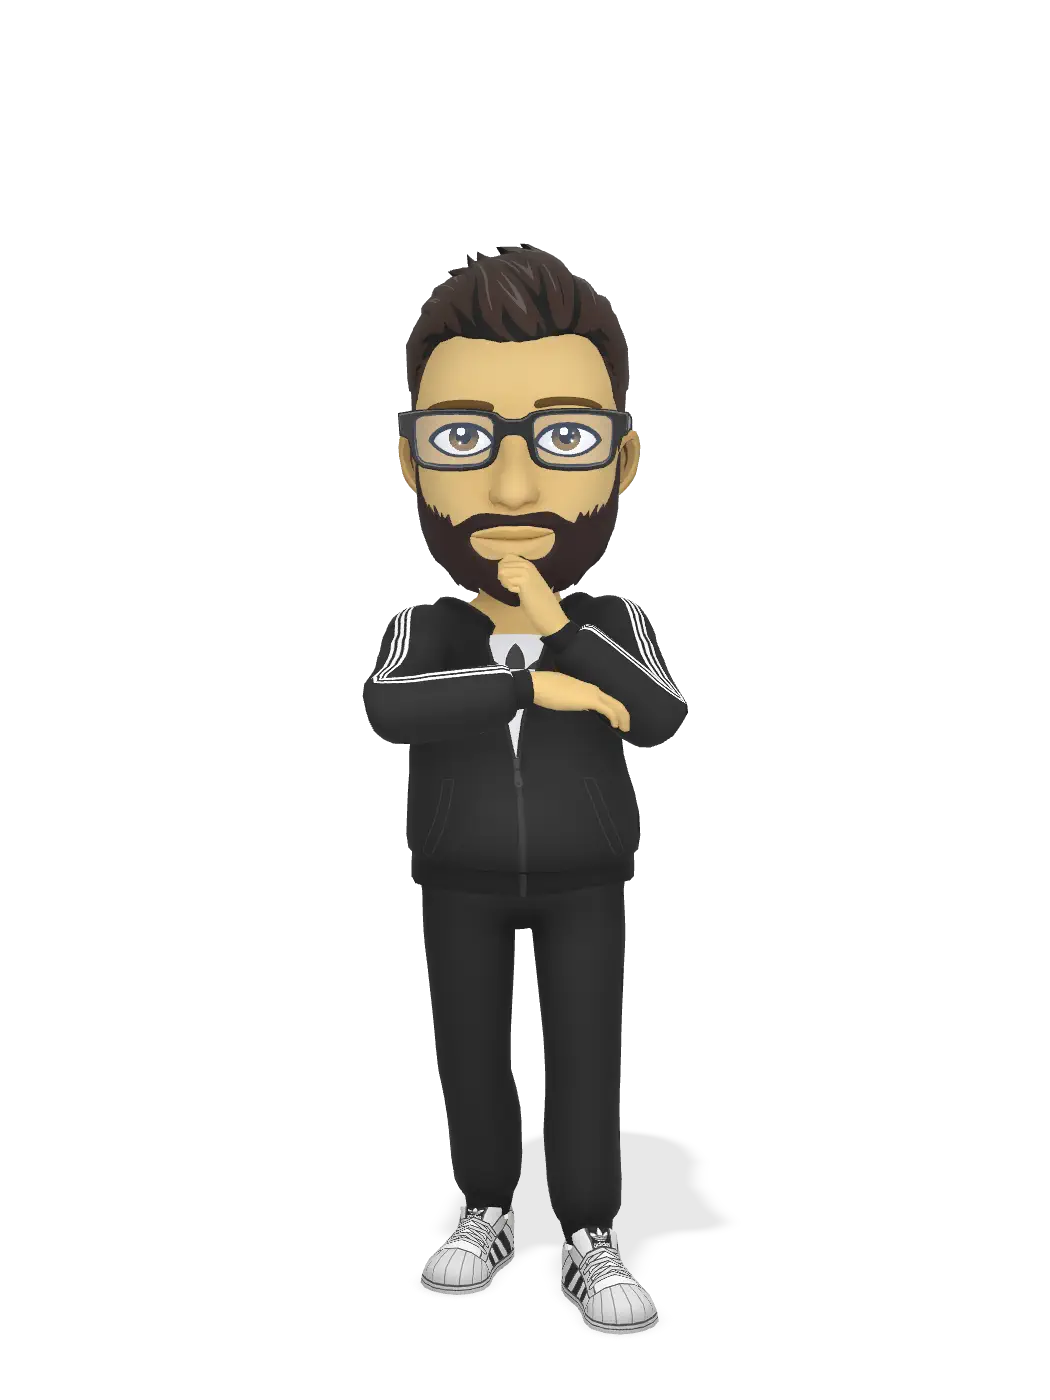 3D Bitmoji for frasisgo avatar